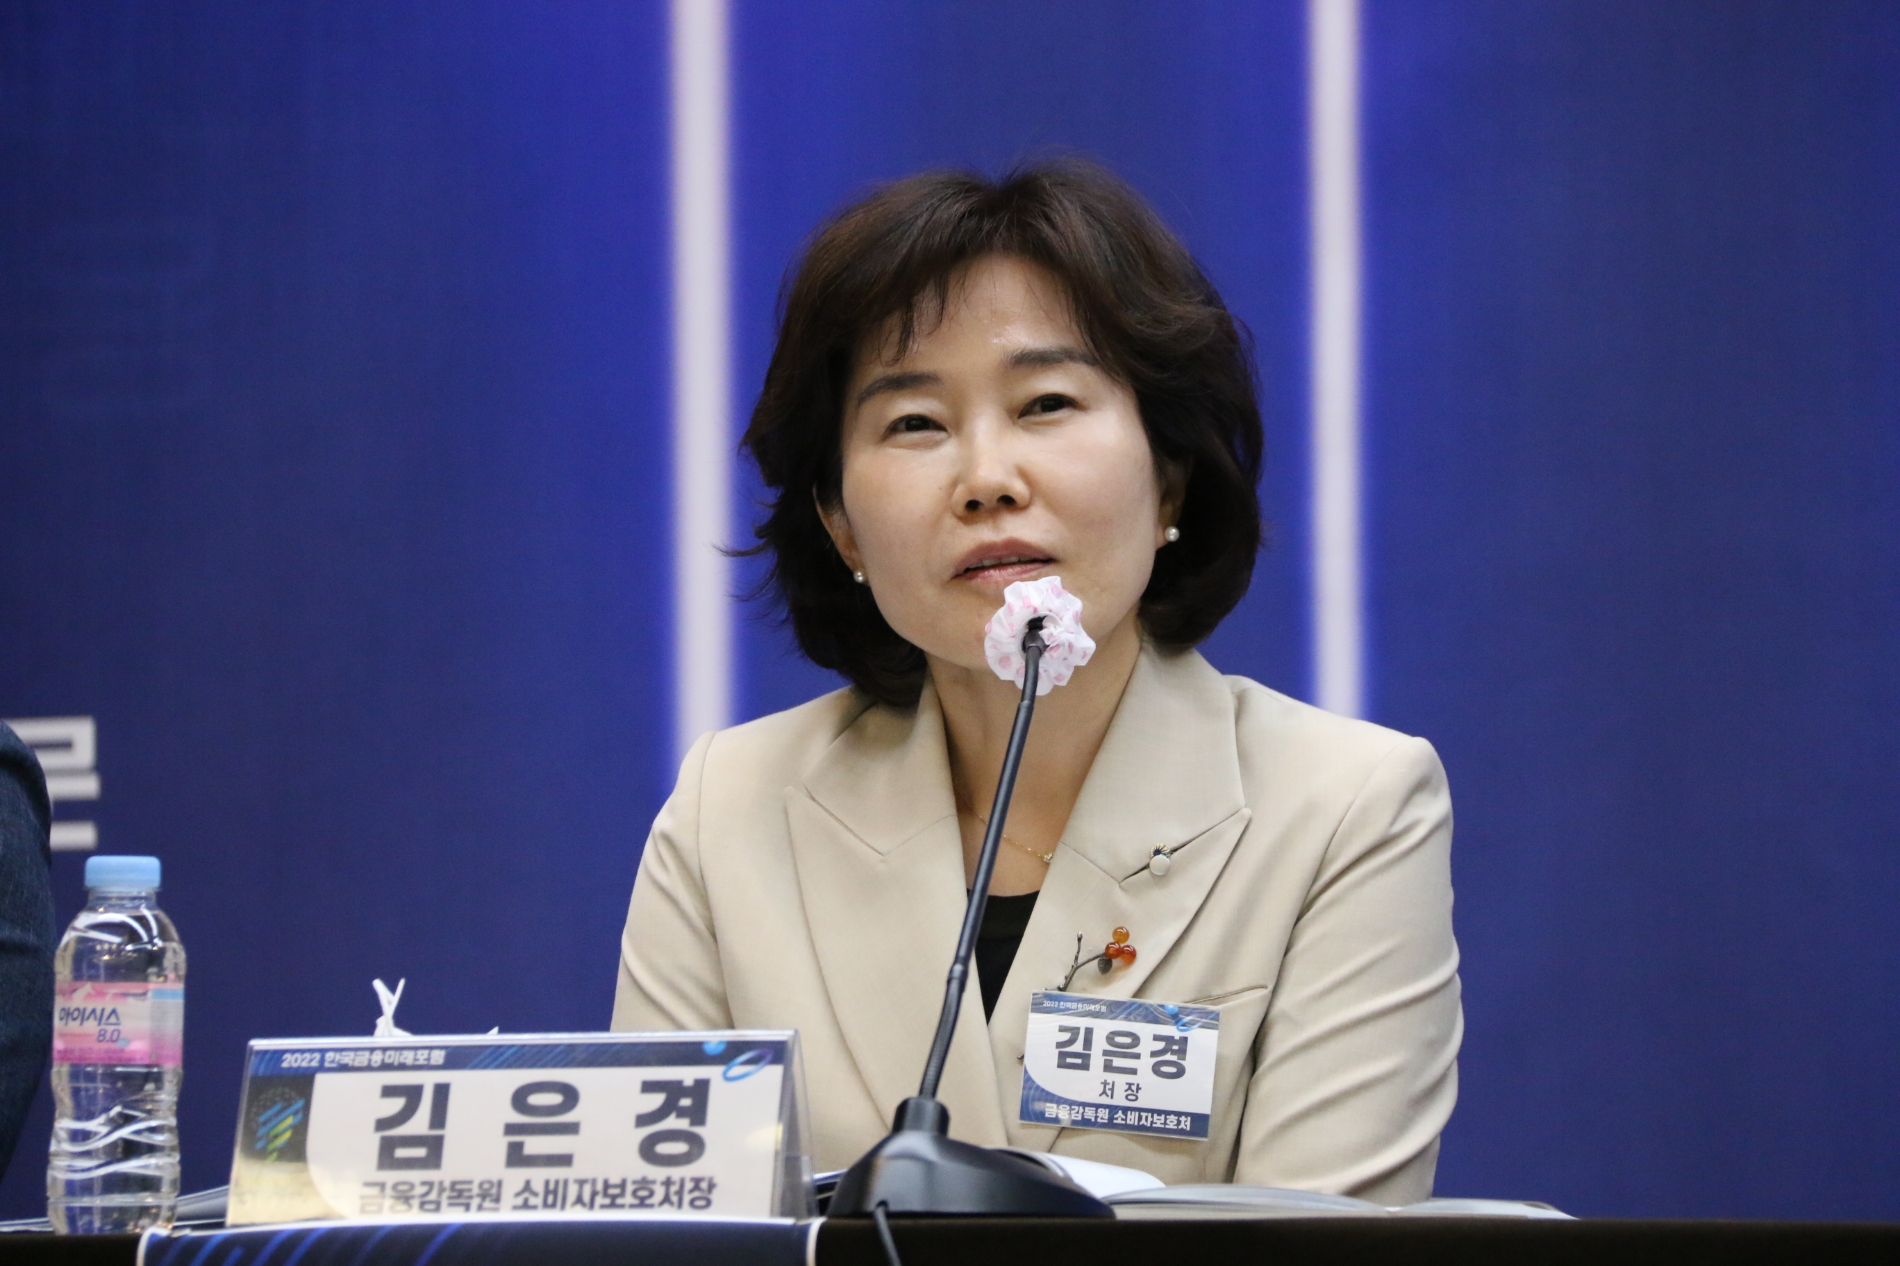 김은경 금융감독원 금융소비자보호처장이 17일 열린 2022 한국금융미래포럼에서 패널토론에 참여하고 있다.